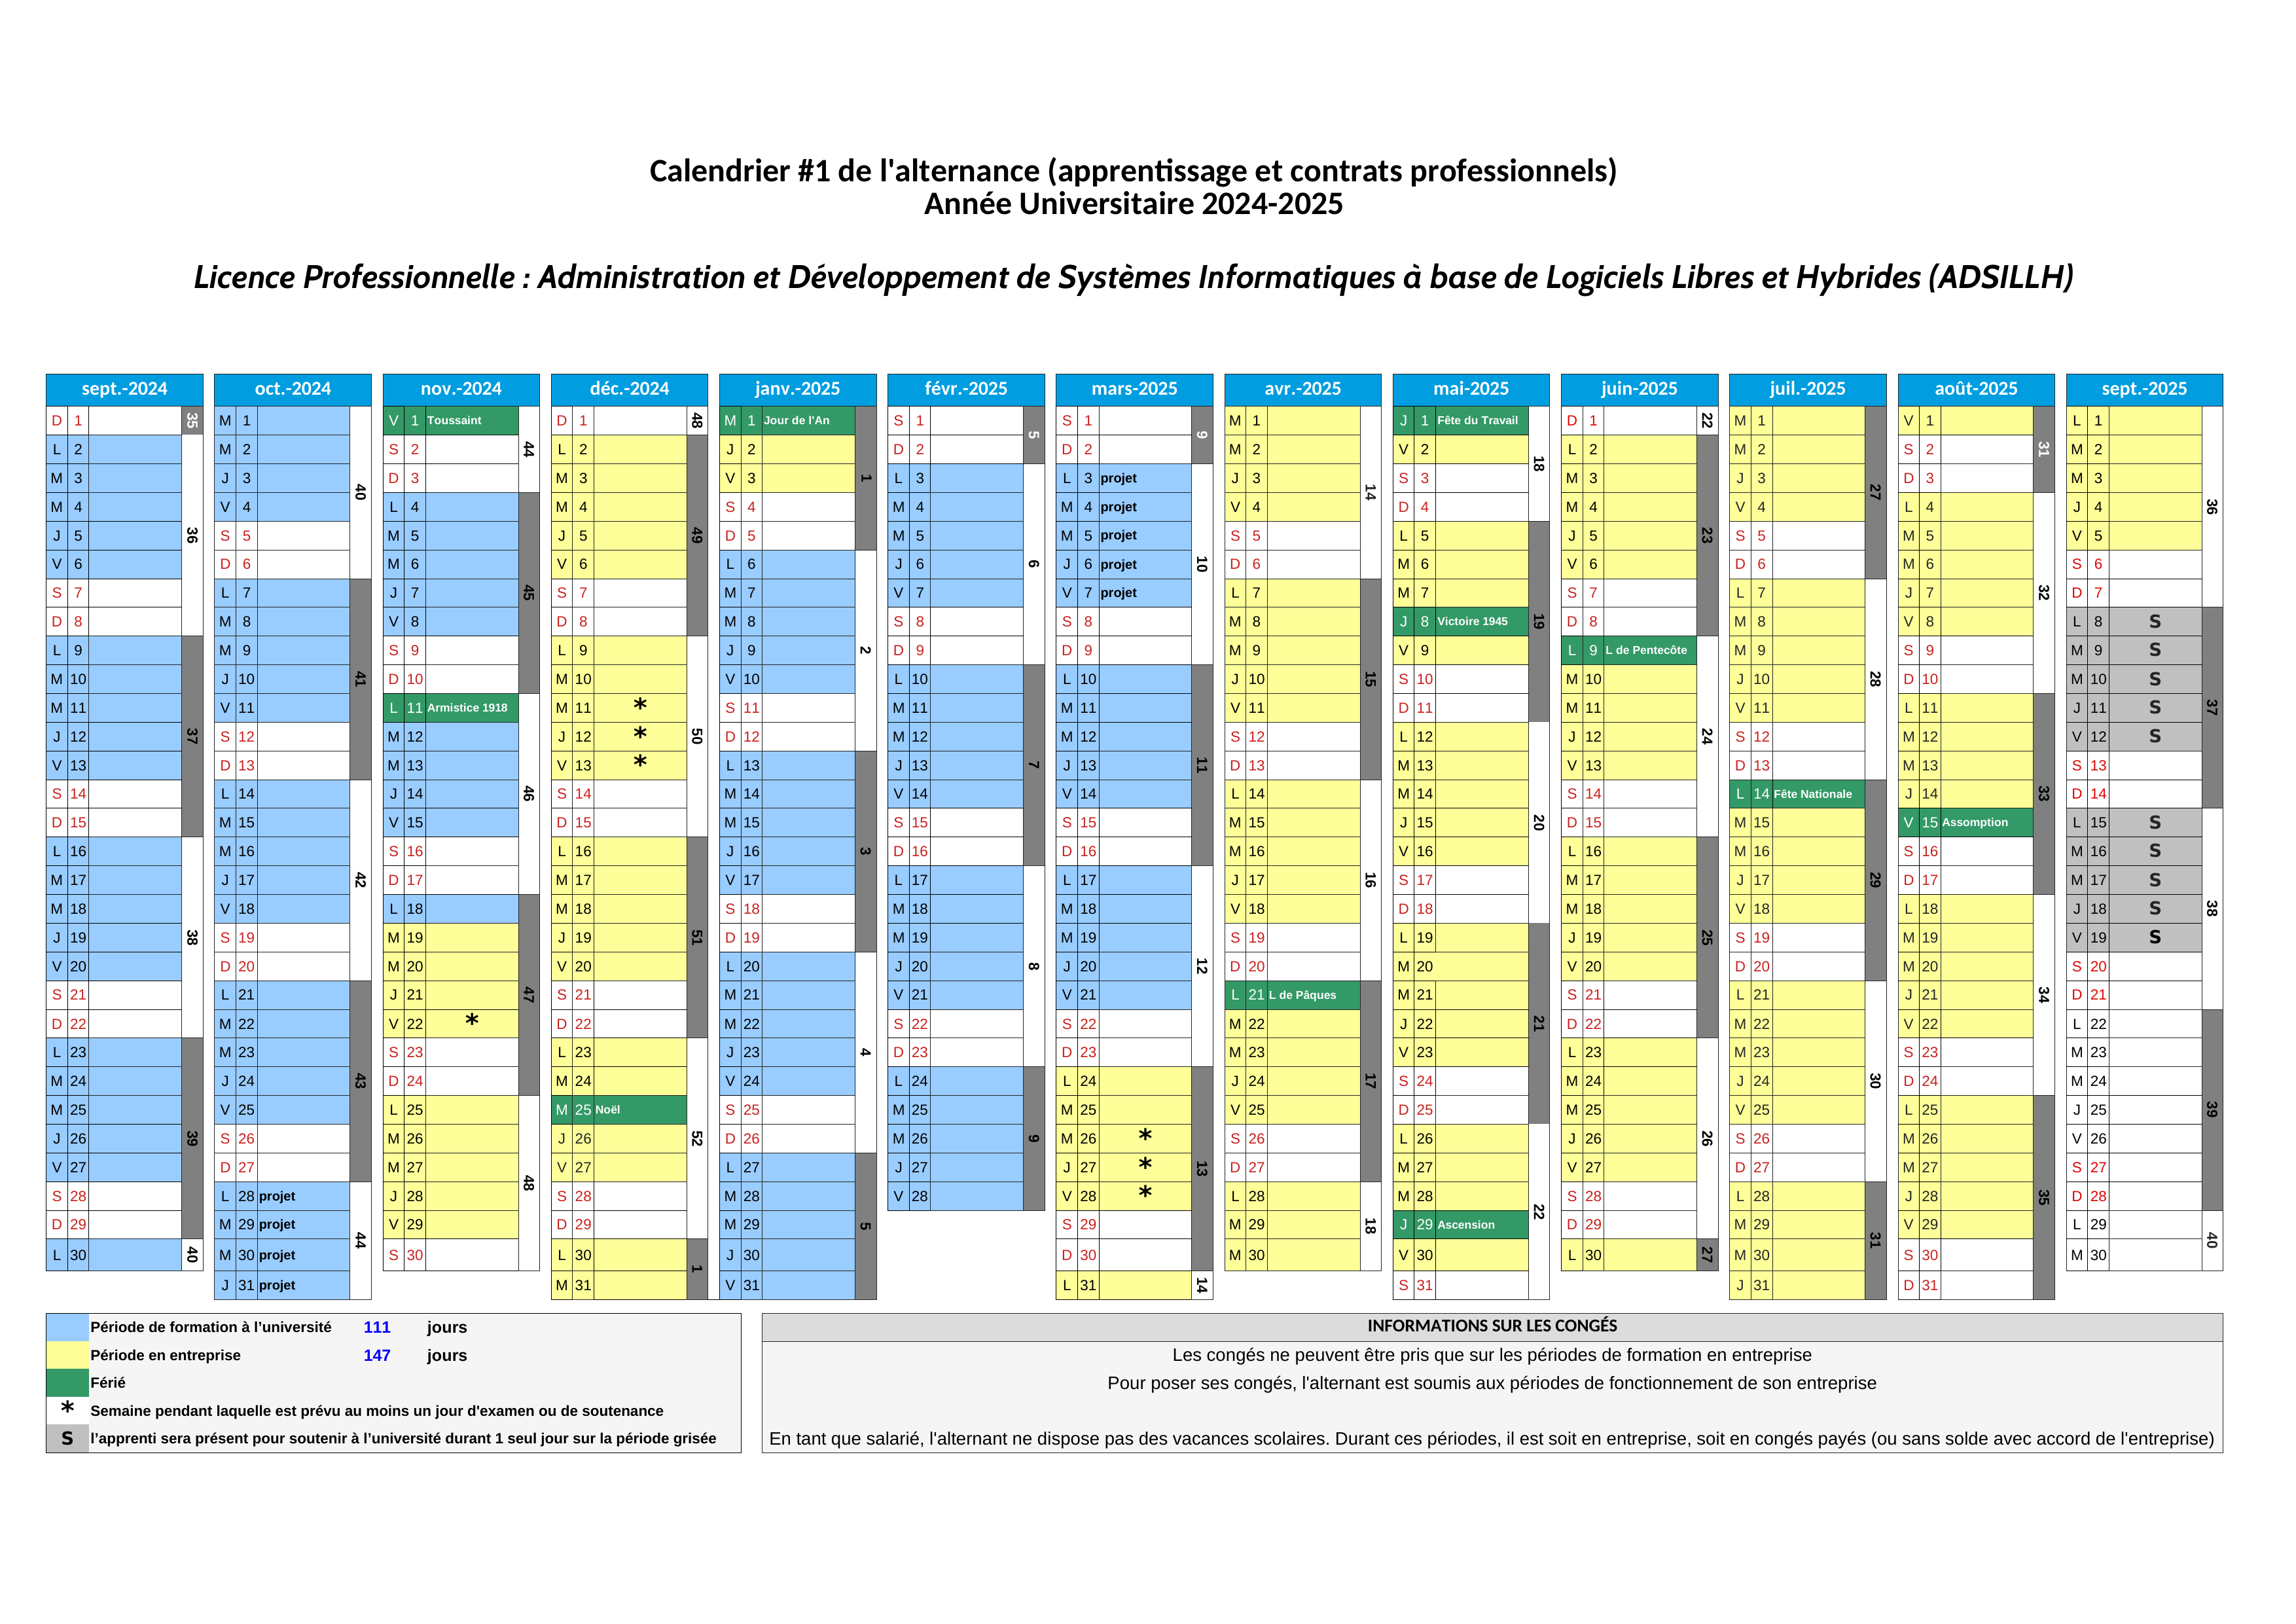 Calendrier prévisionnel (2024-2025) [alternance 1]